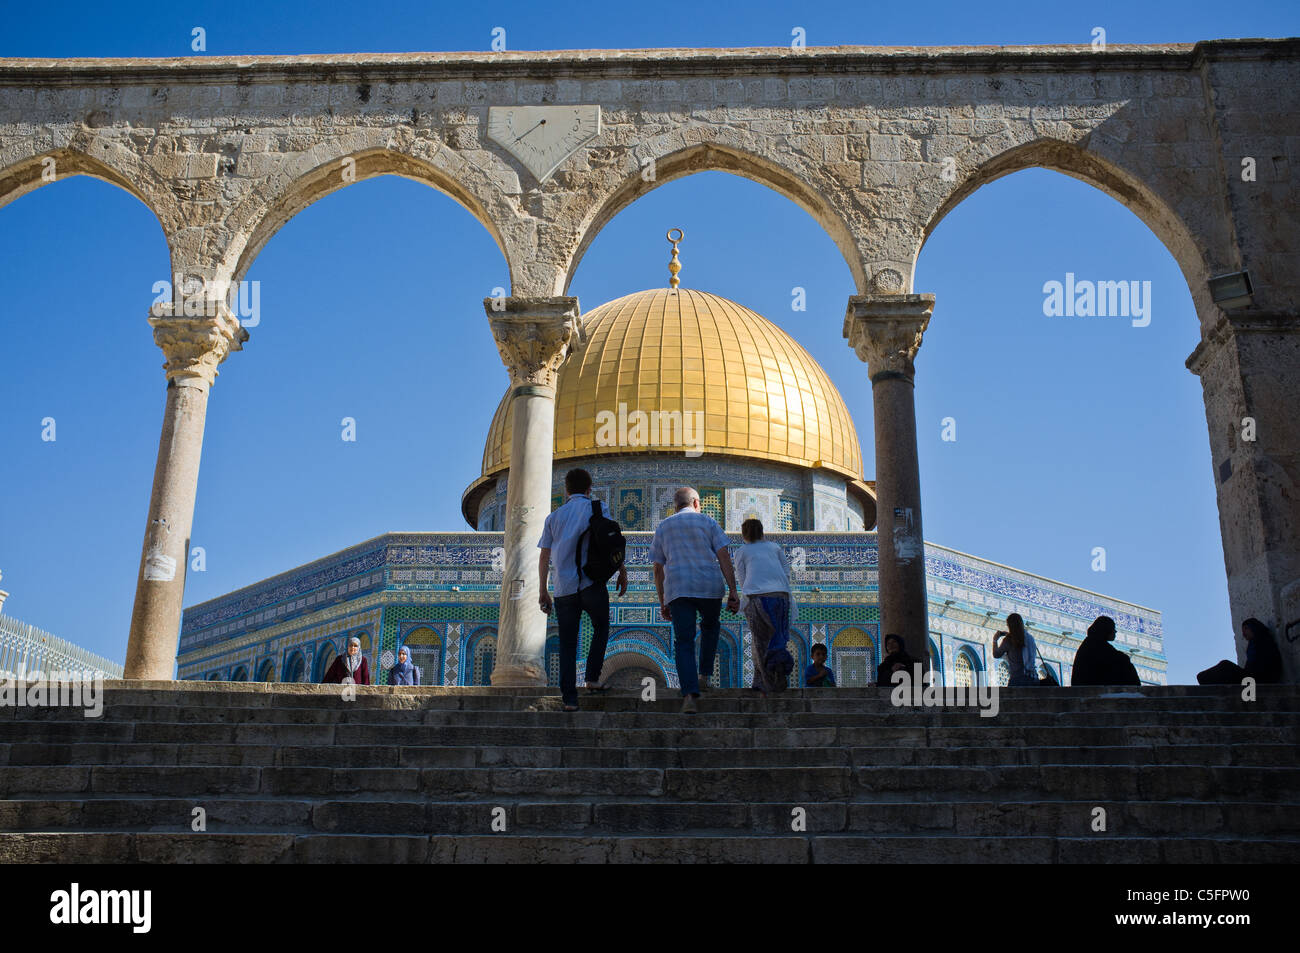 Cupola della roccia sul Monte del Tempio. Gerusalemme, Israele. 20/07/2011. Foto Stock